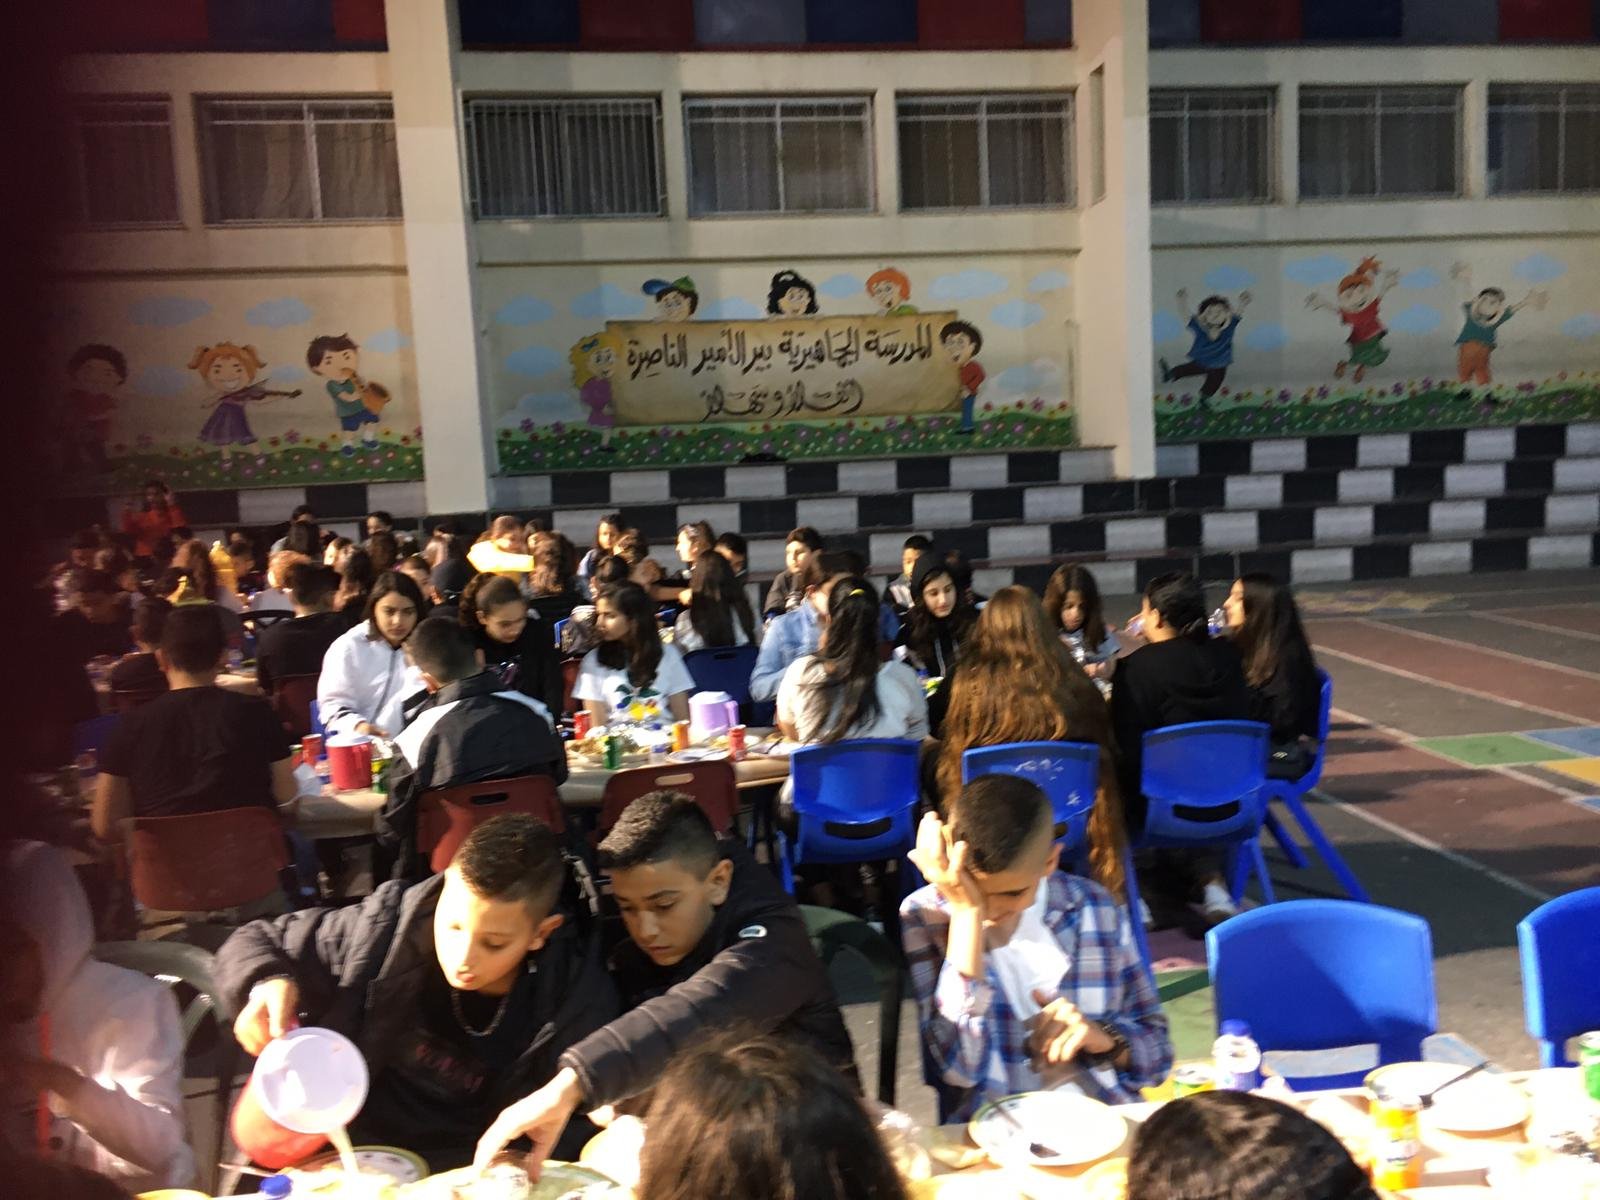 أمسية رمضانية تُعيد النكهة لطقوس وروحانيات الشهر الفضيل في المدرسة الجماهيريّة بئر الأمير-الناصرة-18